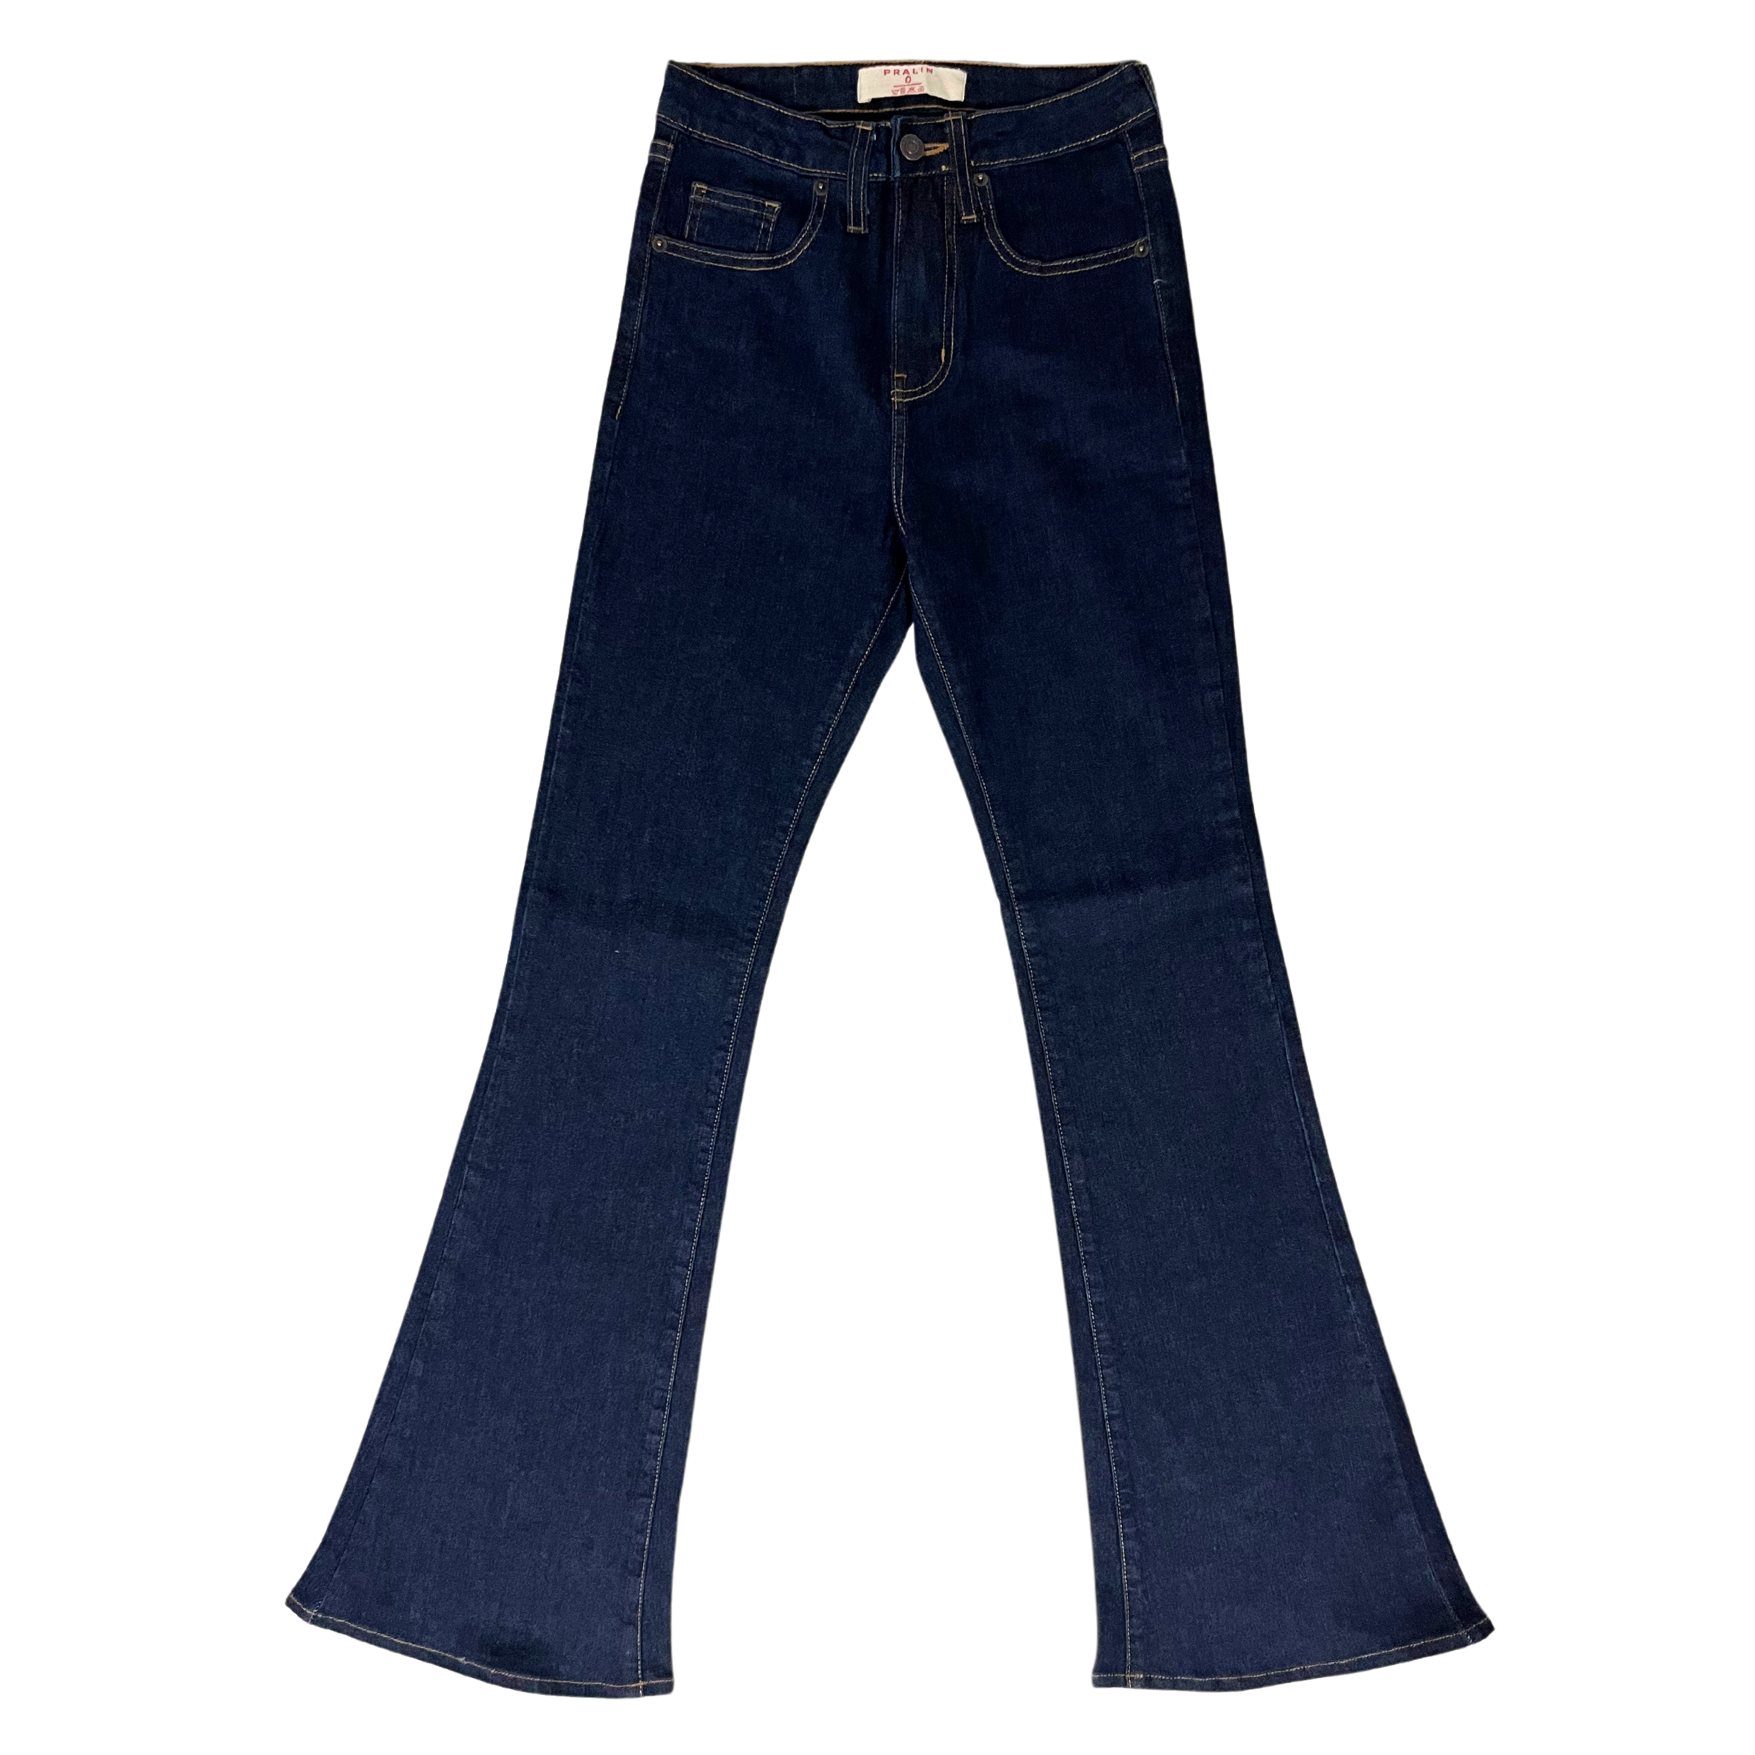 Jeans Acampanados Azul Oscuro Estilo Slim para Mujer